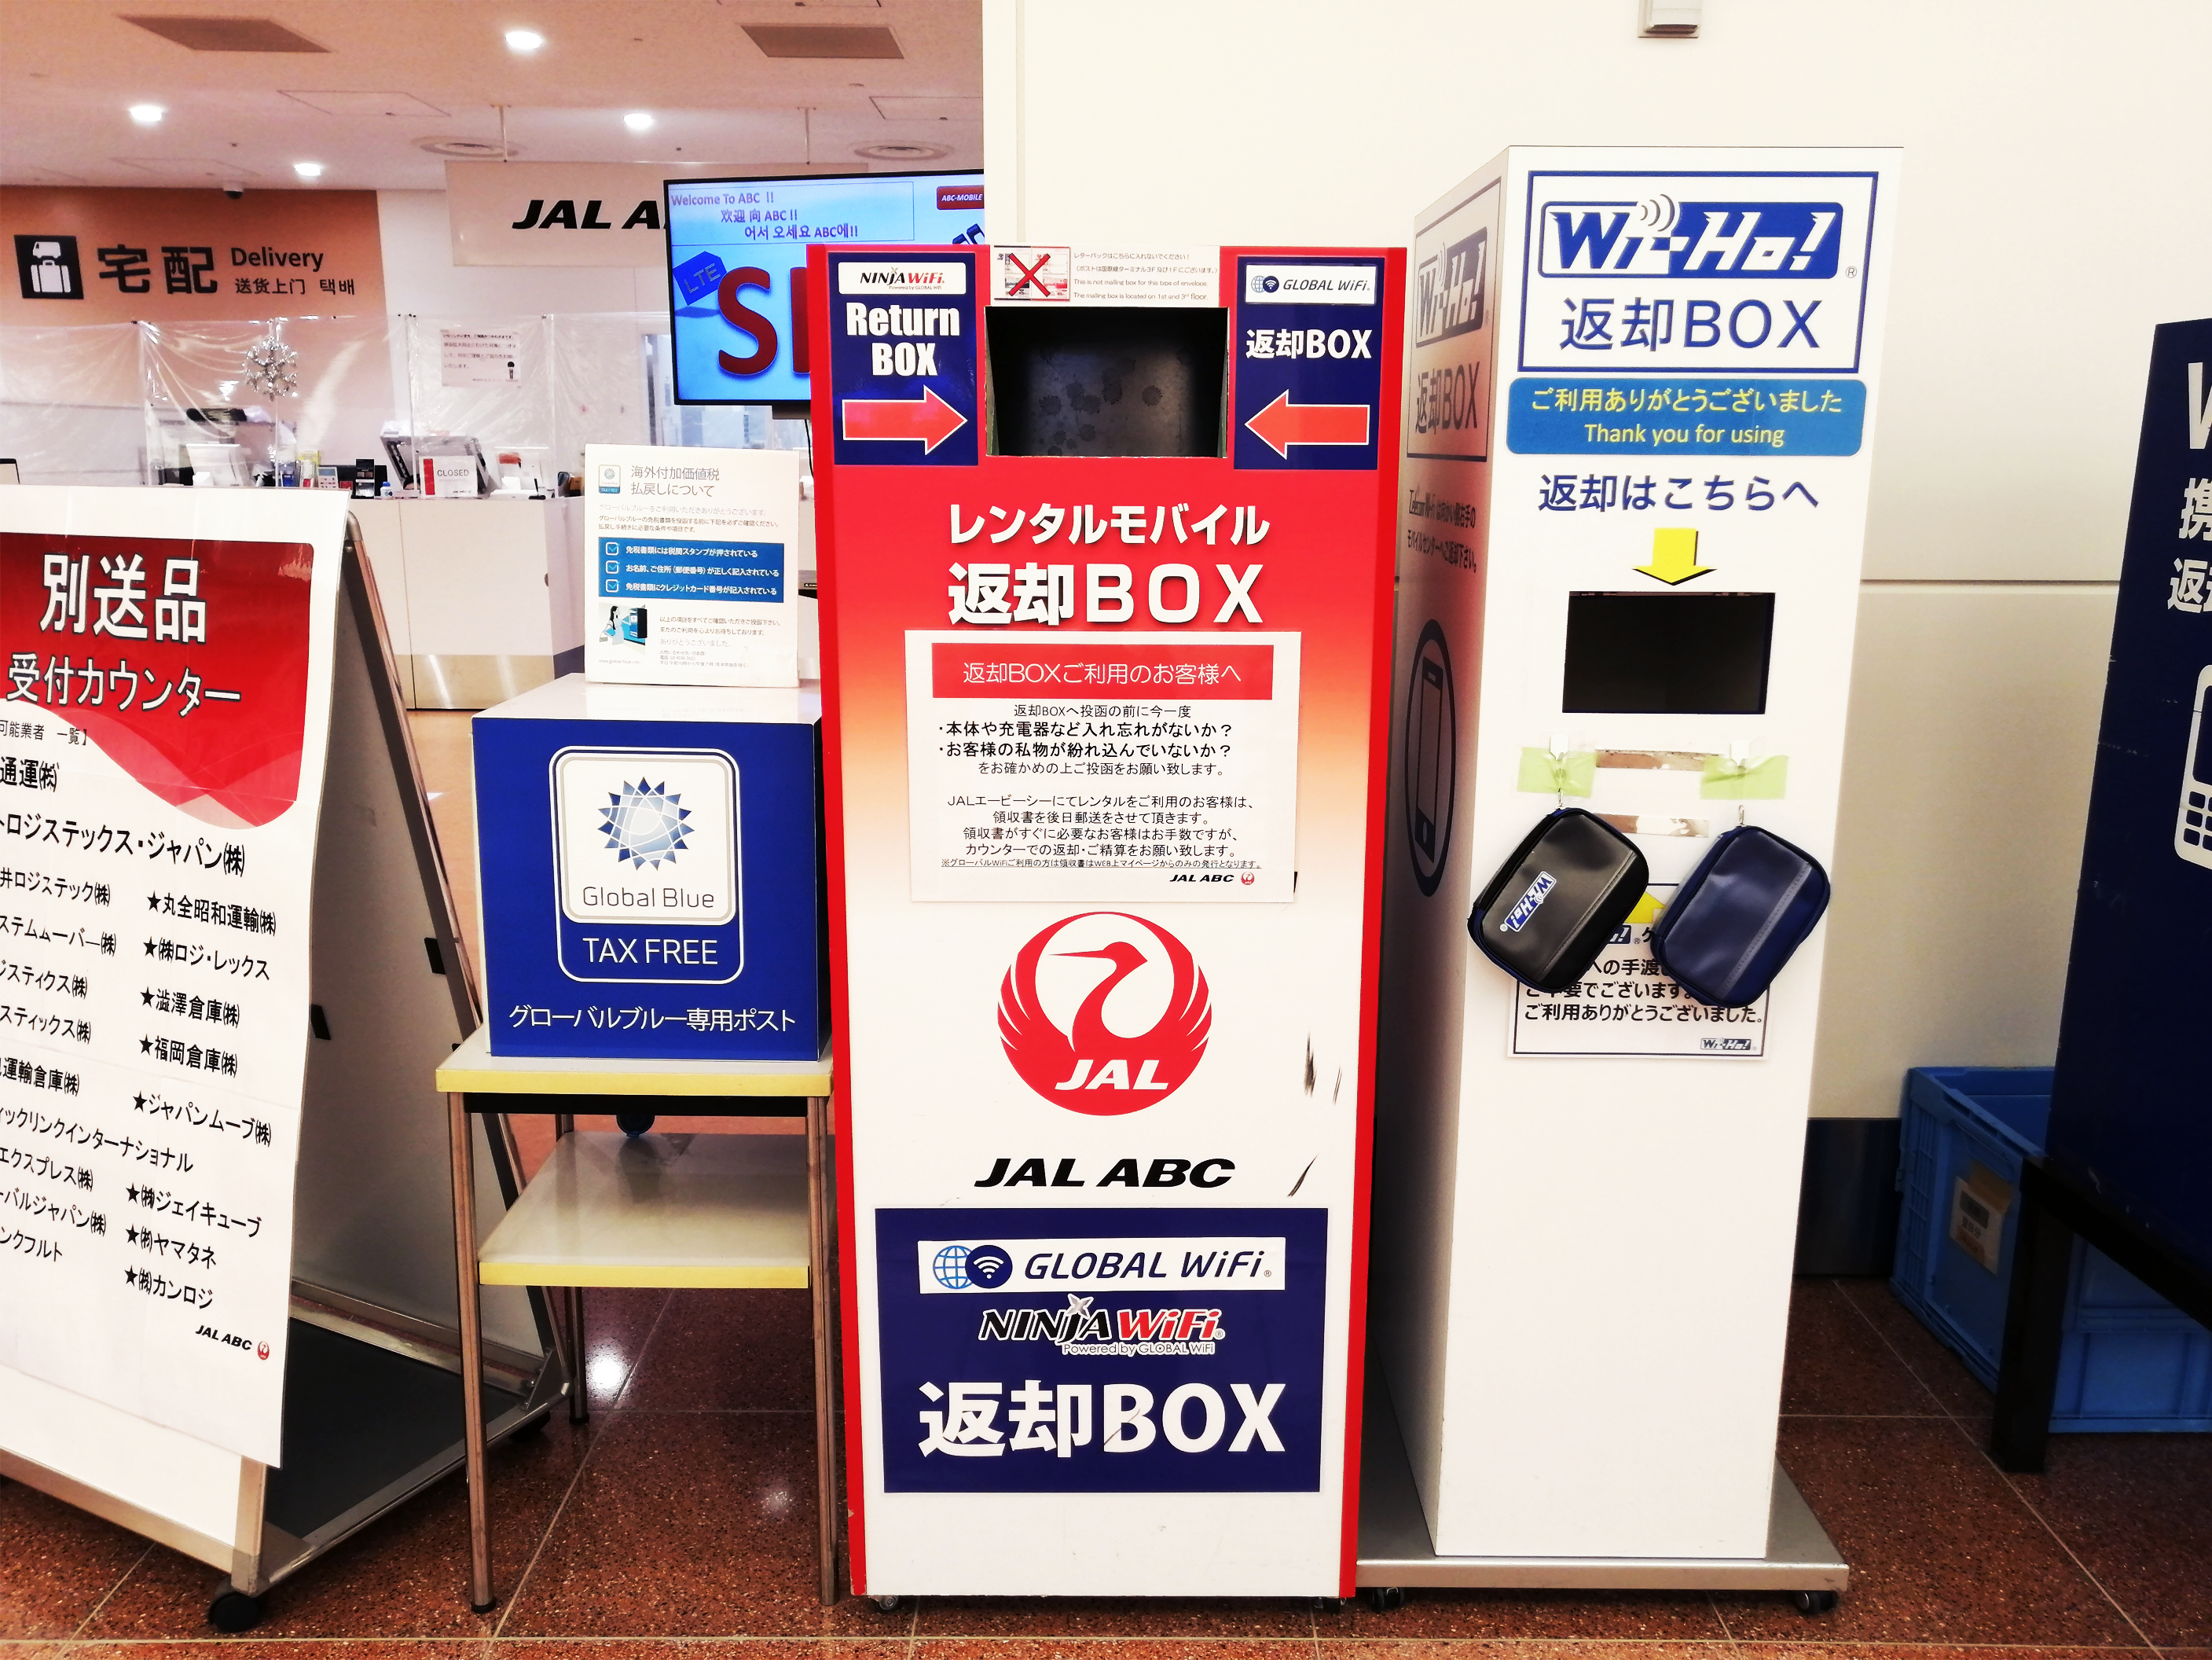 羽田空港 第3ターミナル JAL ABCカウンター レンタルモバイル 返却BOX